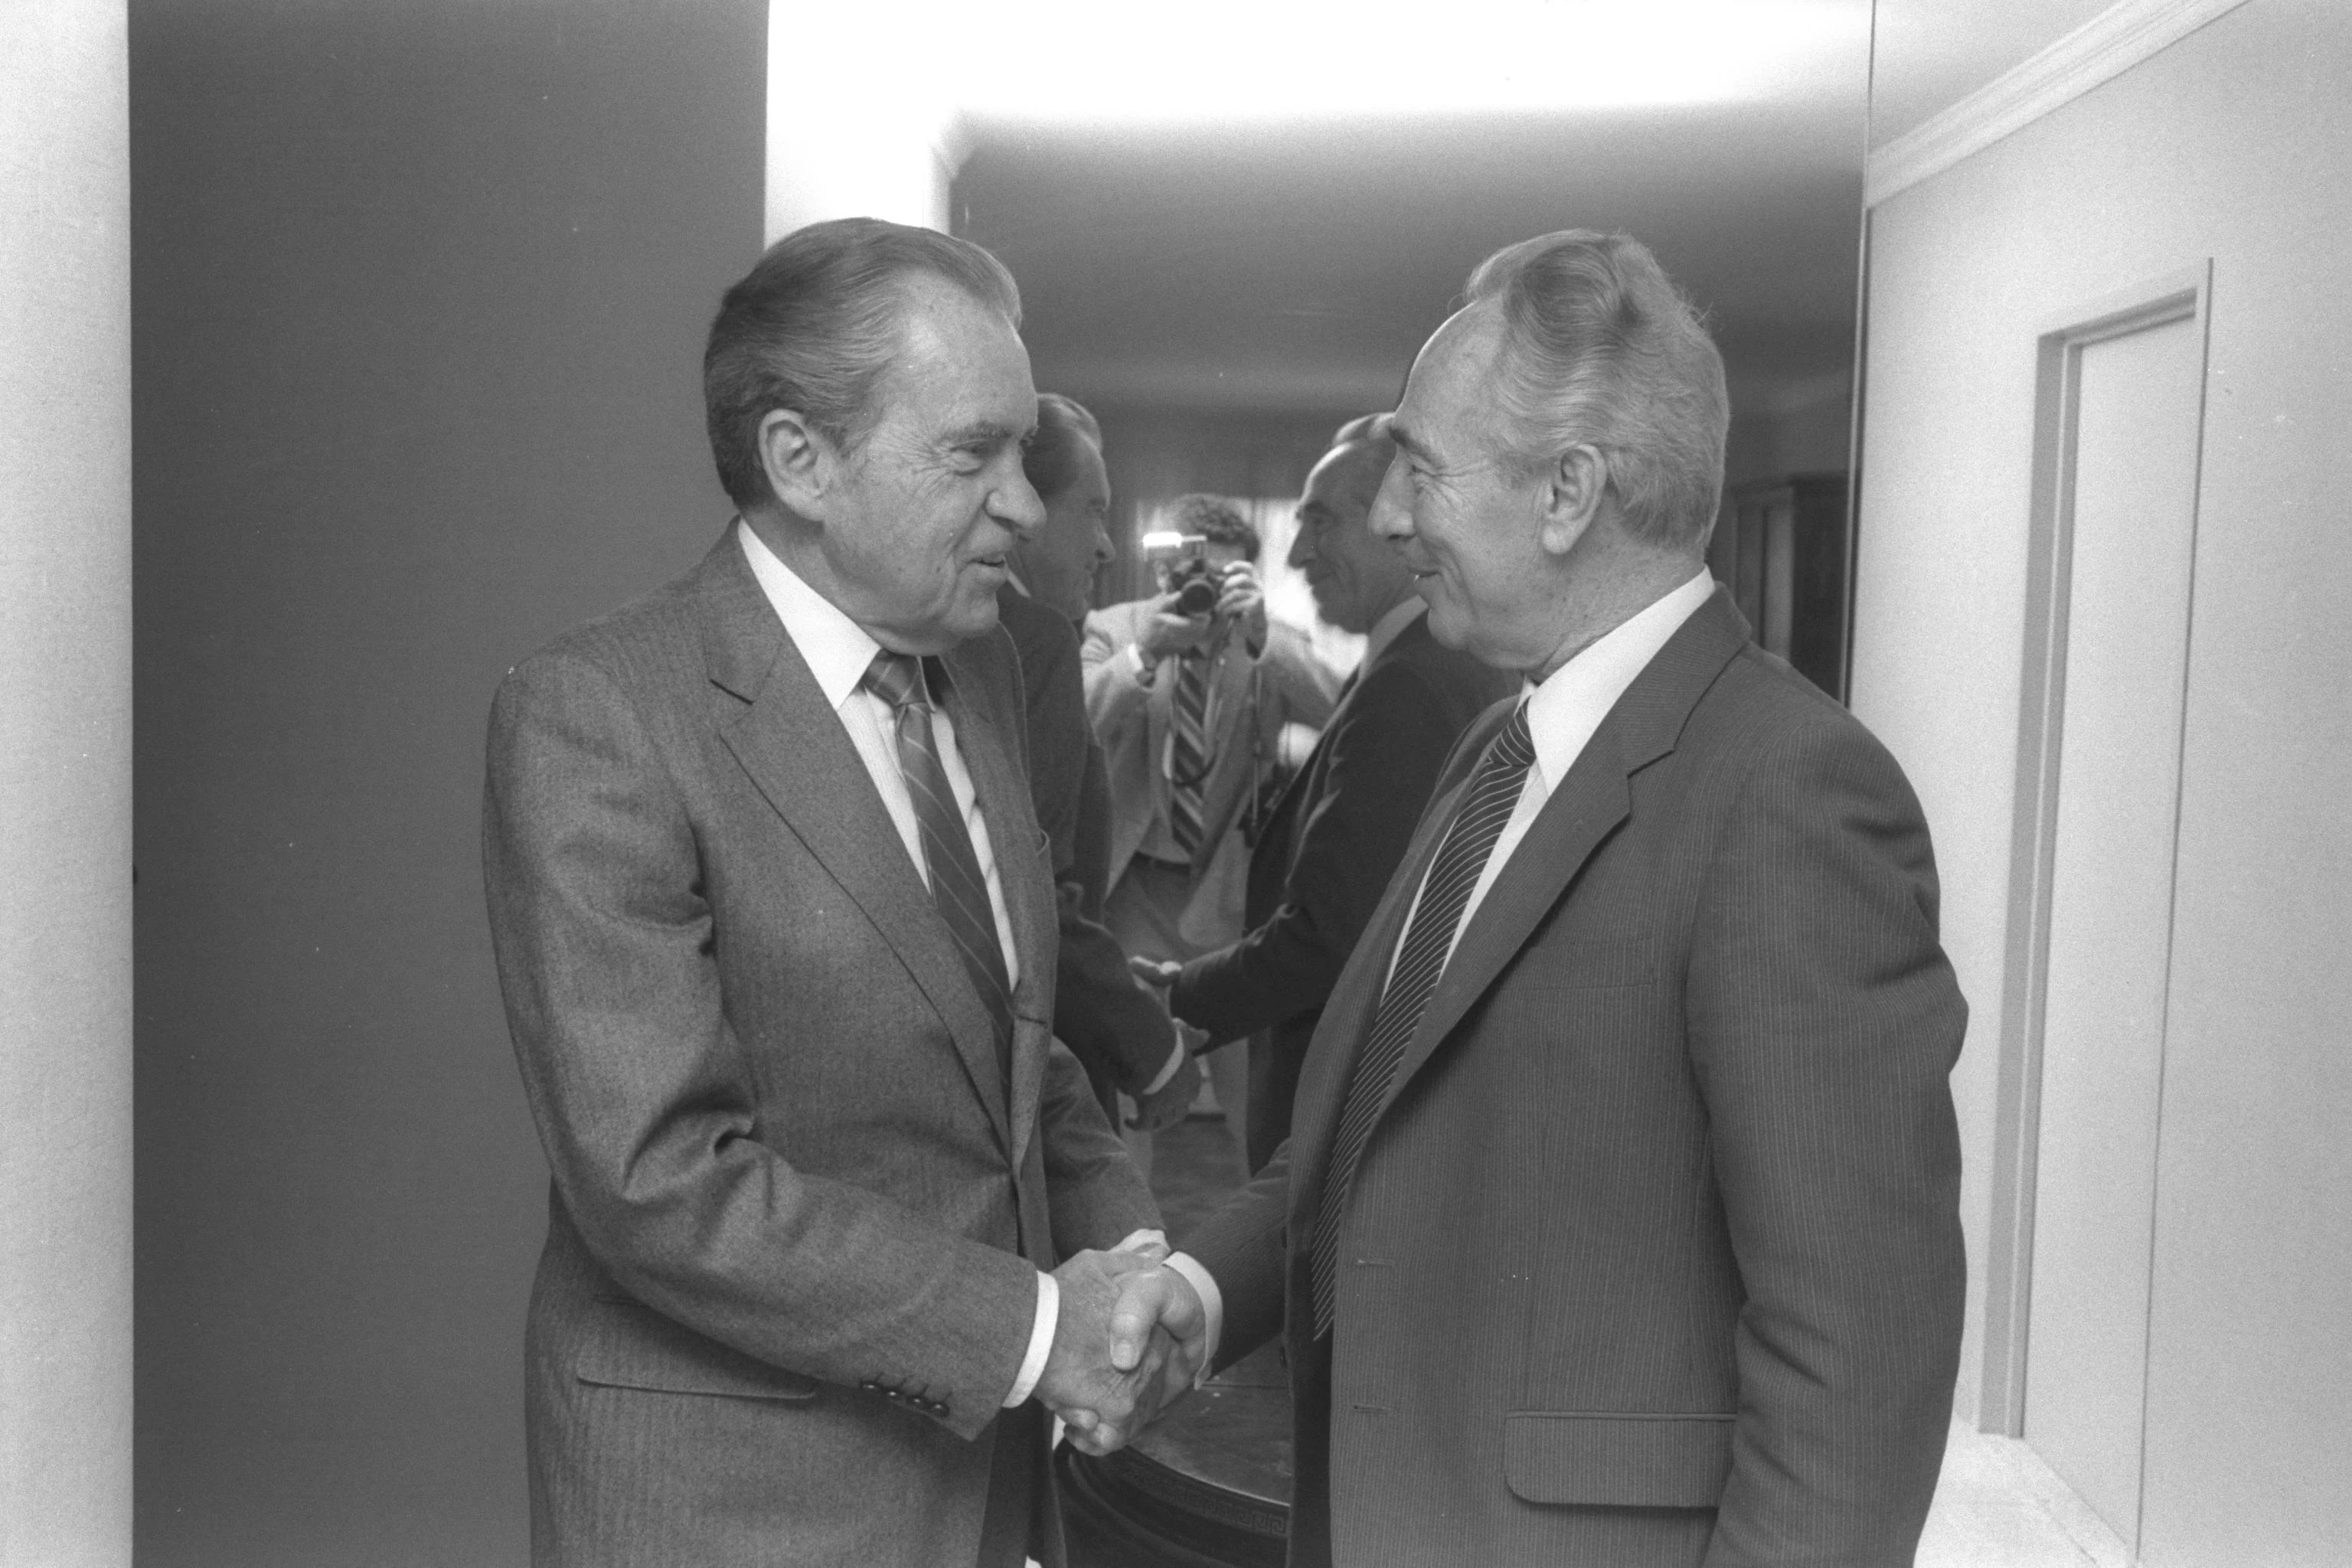 הנשיא ניקסון נפגש עם שר הבטחון שמעון פרס